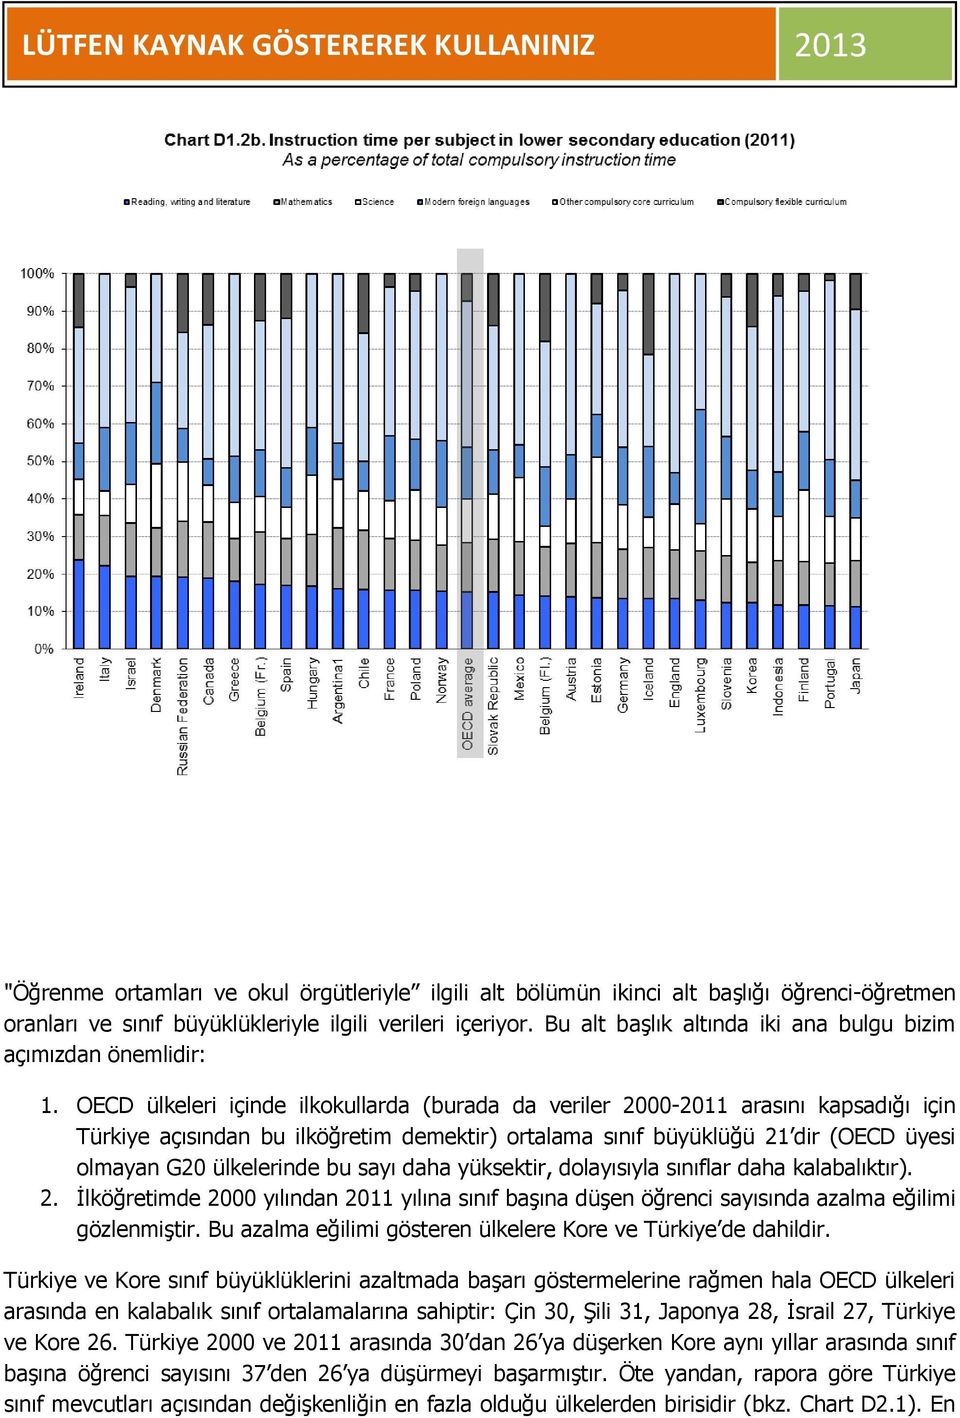 OECD ülkeleri içinde ilkokullarda (burada da veriler 2000-2011 arasını kapsadığı için Türkiye açısından bu ilköğretim demektir) ortalama sınıf büyüklüğü 21 dir (OECD üyesi olmayan G20 ülkelerinde bu